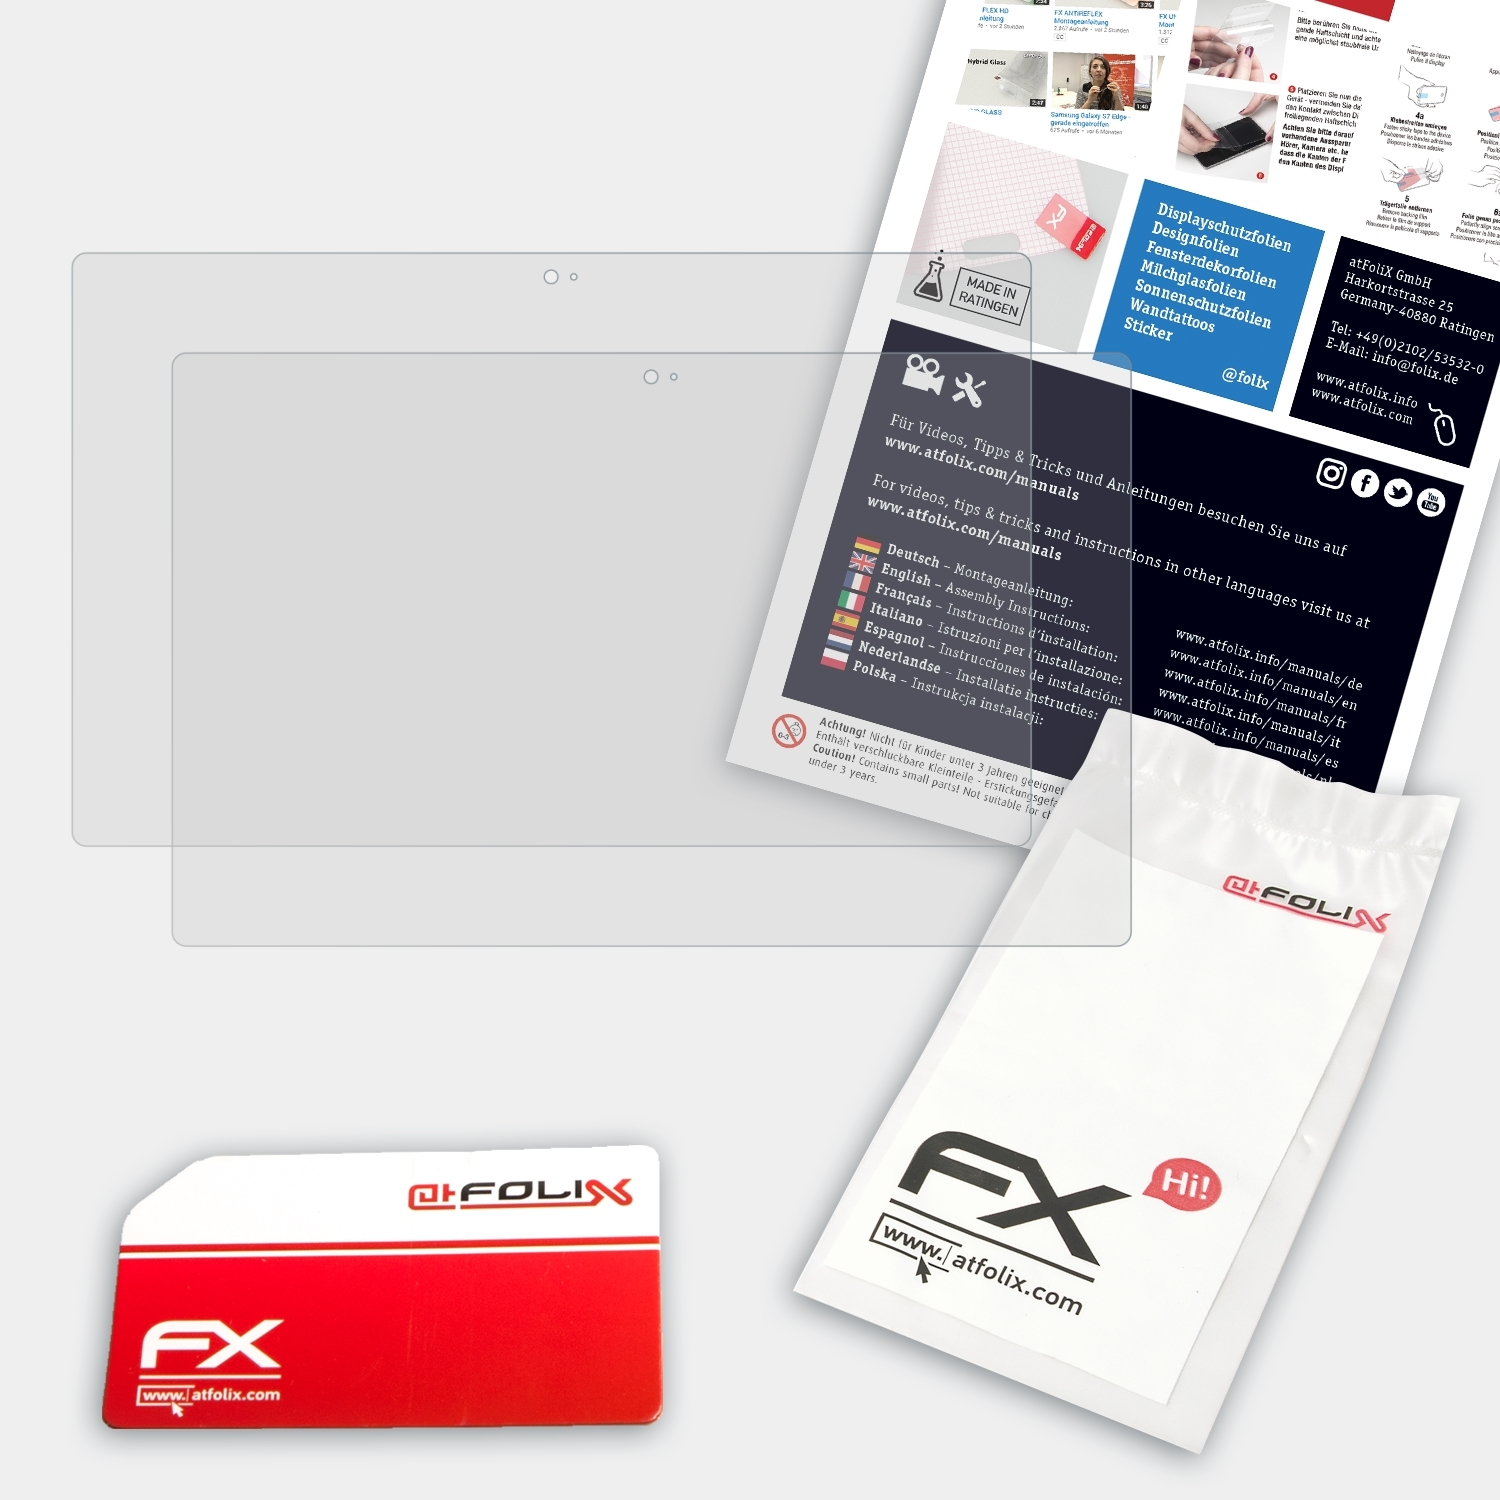 FX-Antireflex Displayschutz(für Surface RT) 2x Microsoft ATFOLIX